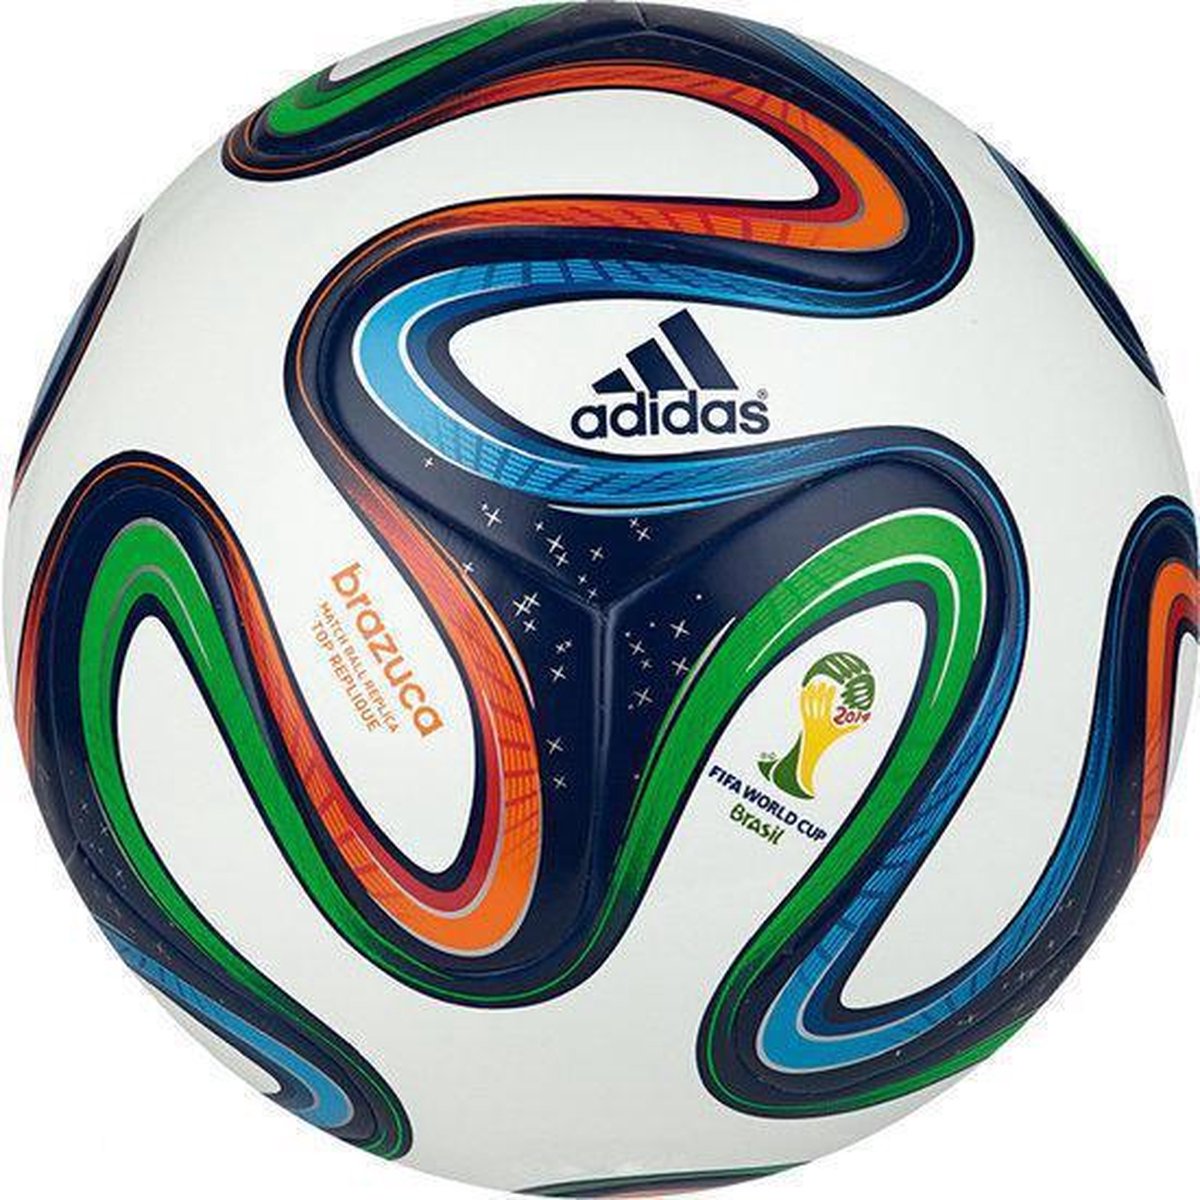 academisch Geef energie Overwegen adidas Brazuca WK 2014 - Voetbal - Replica - Multi | bol.com